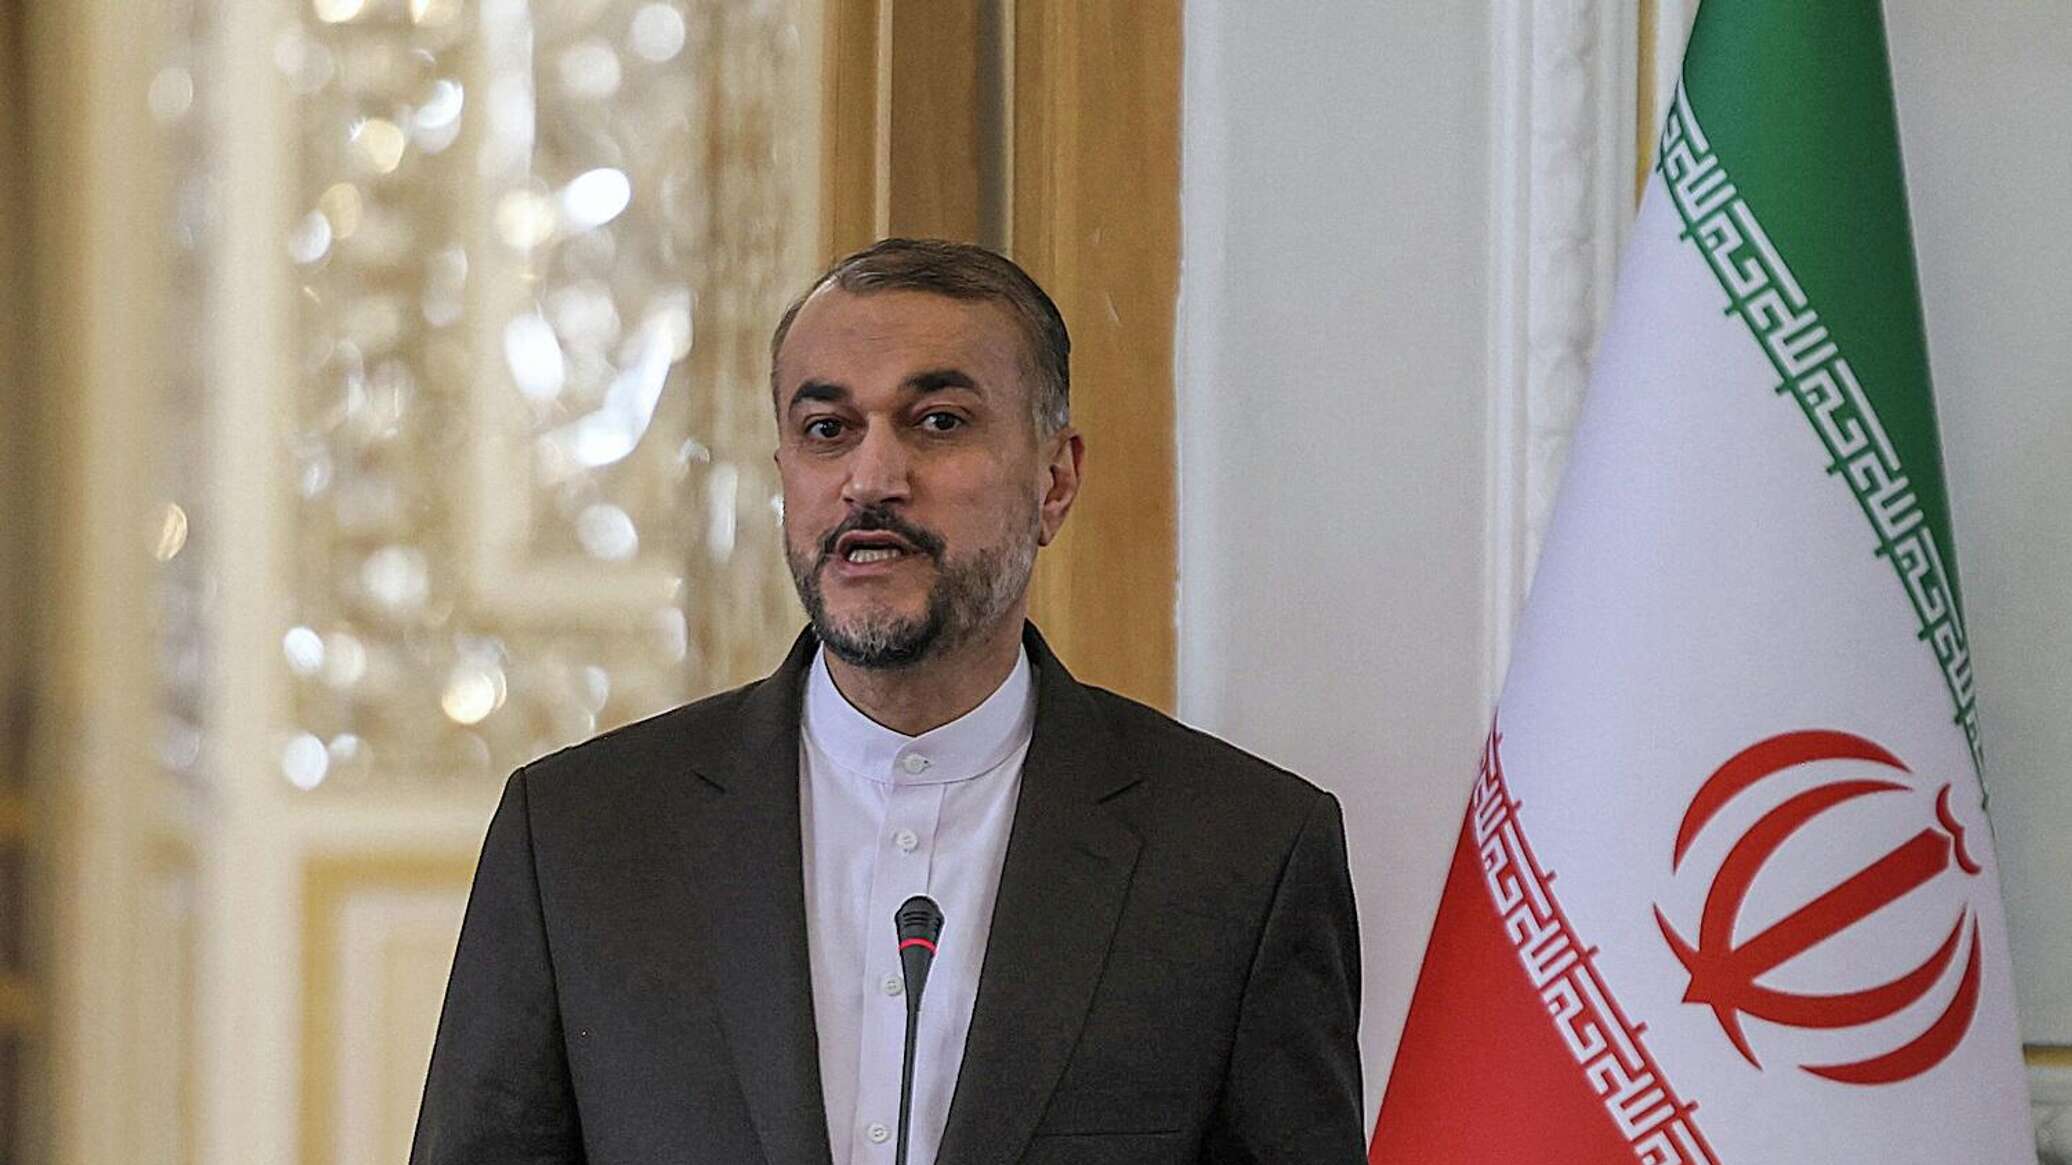 وزير خارجية إيران يوجه رسالة إلى غوتيريش ويحذر من "إبادة جماعية" في قطاع غزة